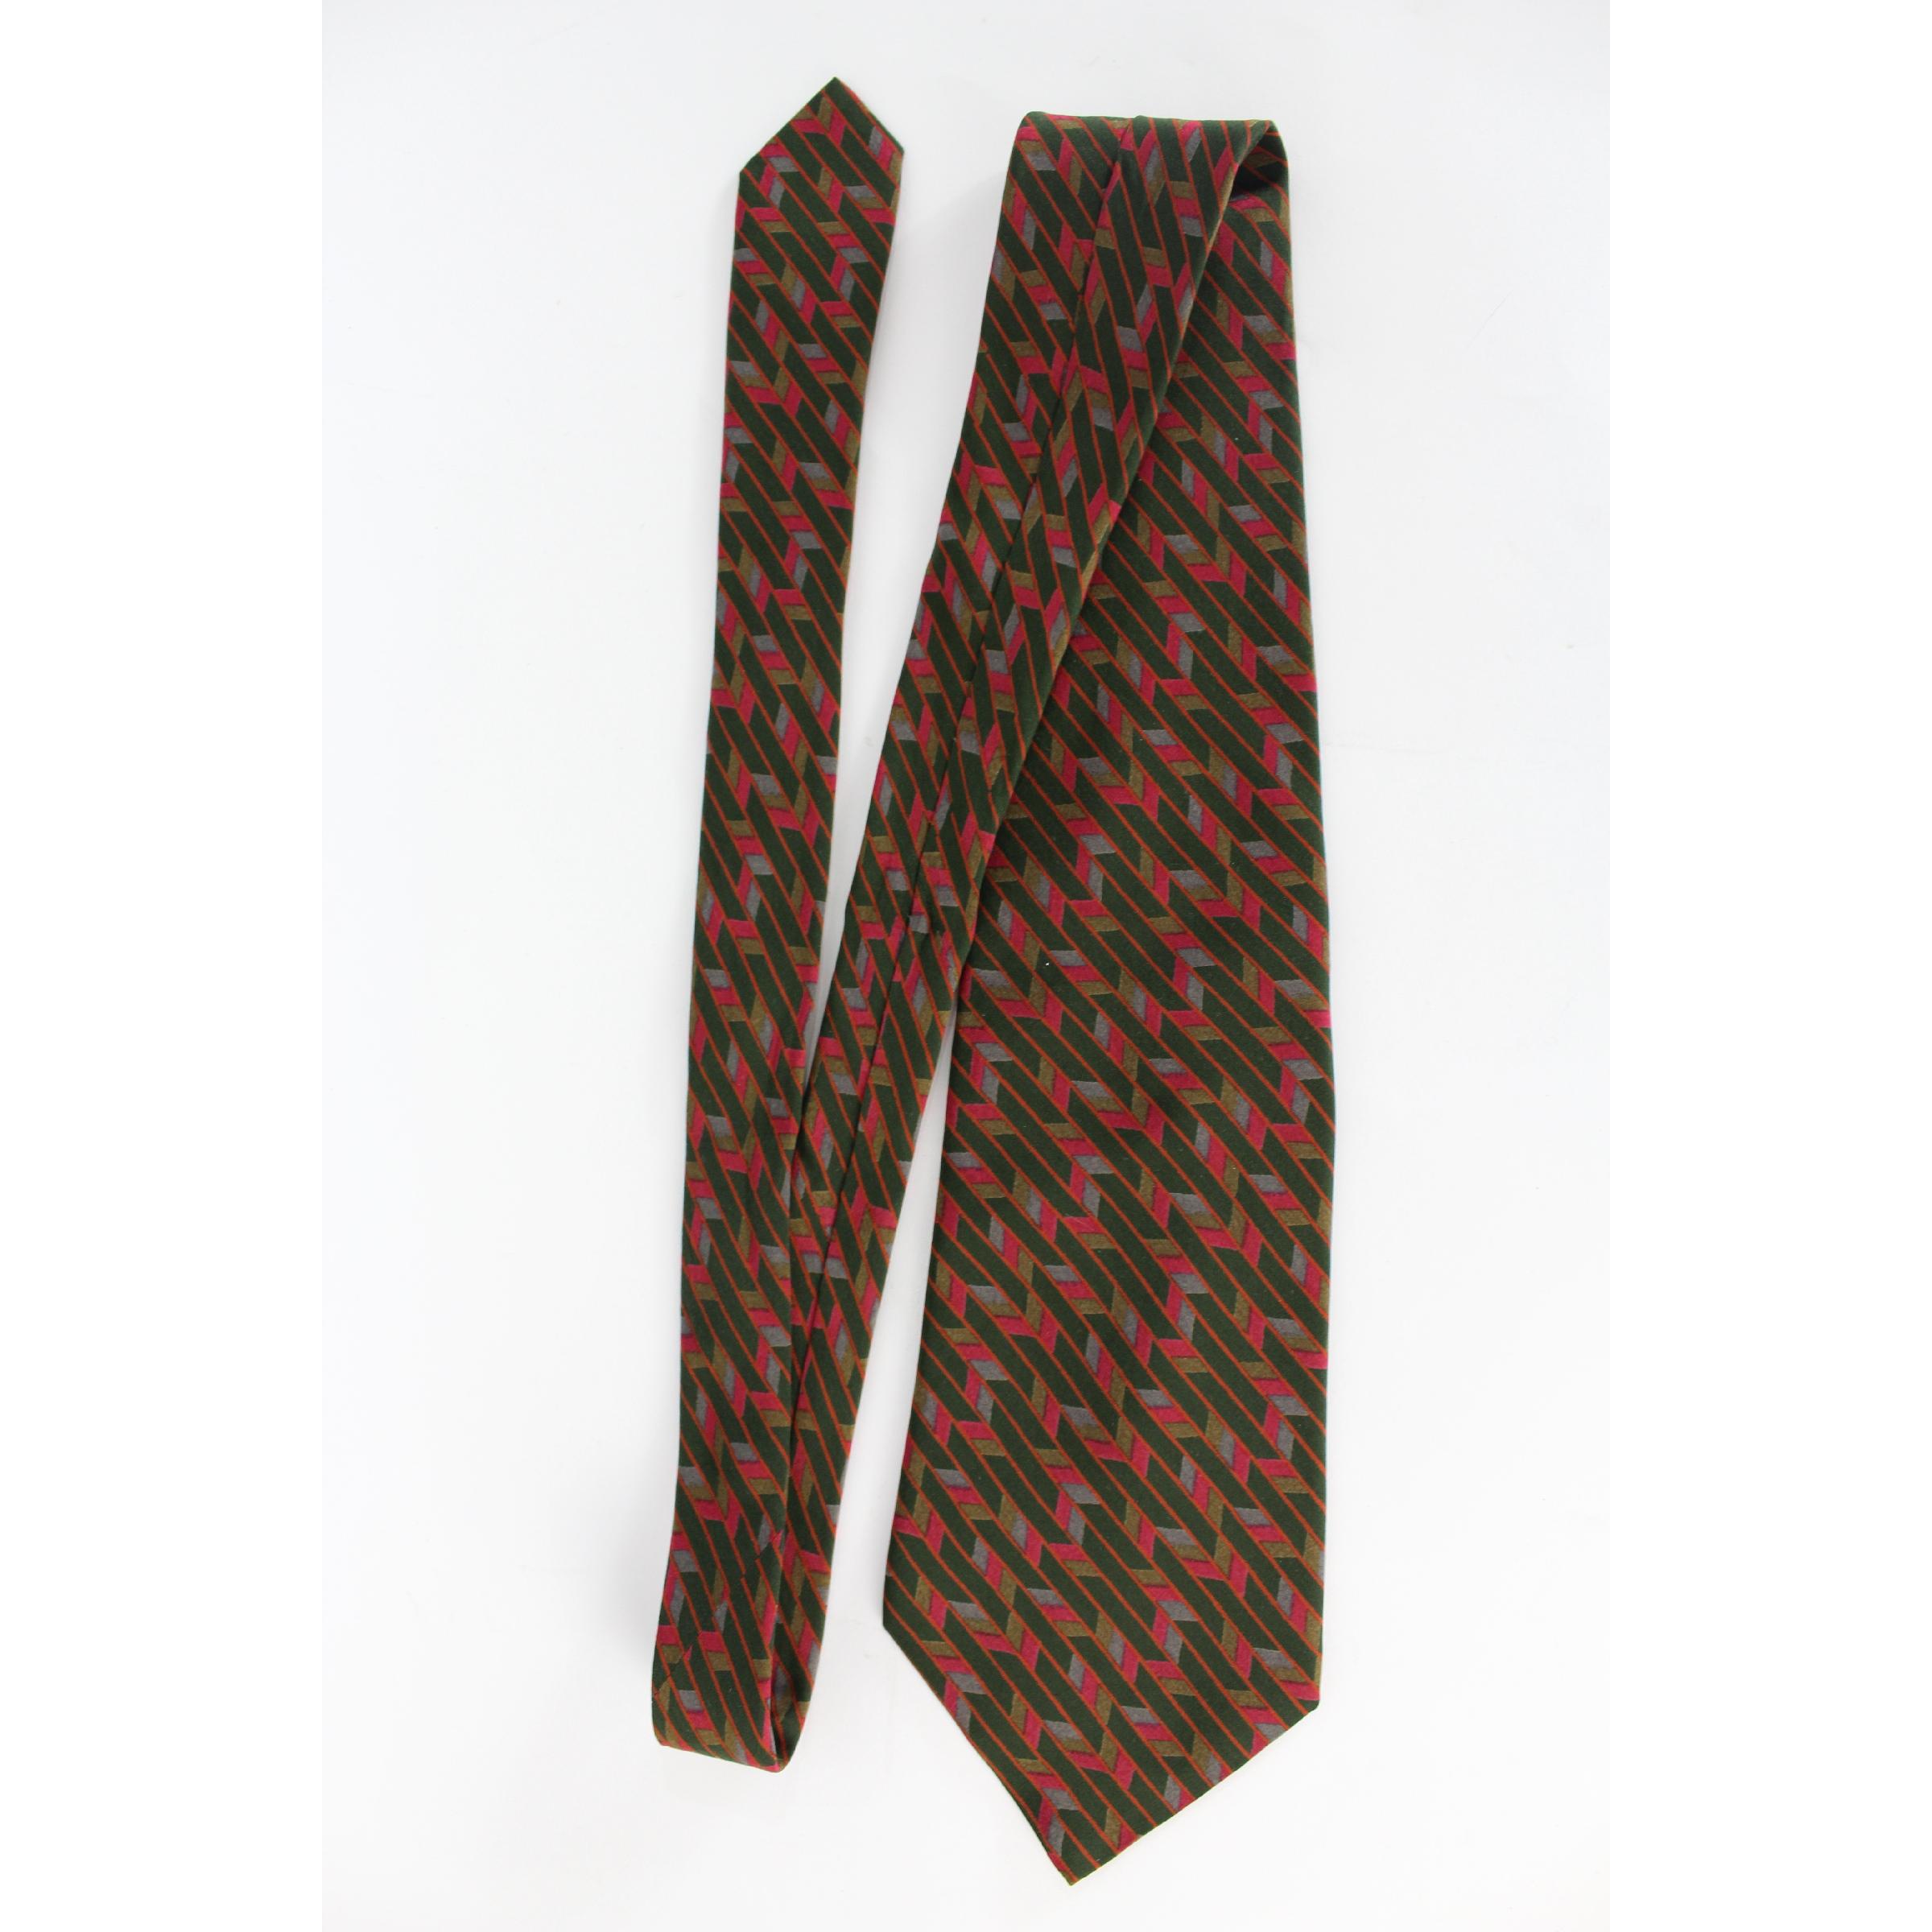 Vintage-Krawatte Yves Saint Laurent, 100% Seide, geometrische Muster in Rot, Orange und Grün. 1990s. Hergestellt in Italien. Ausgezeichnete Bedingungen.

Länge: 136 cm

Breite: 11 cm